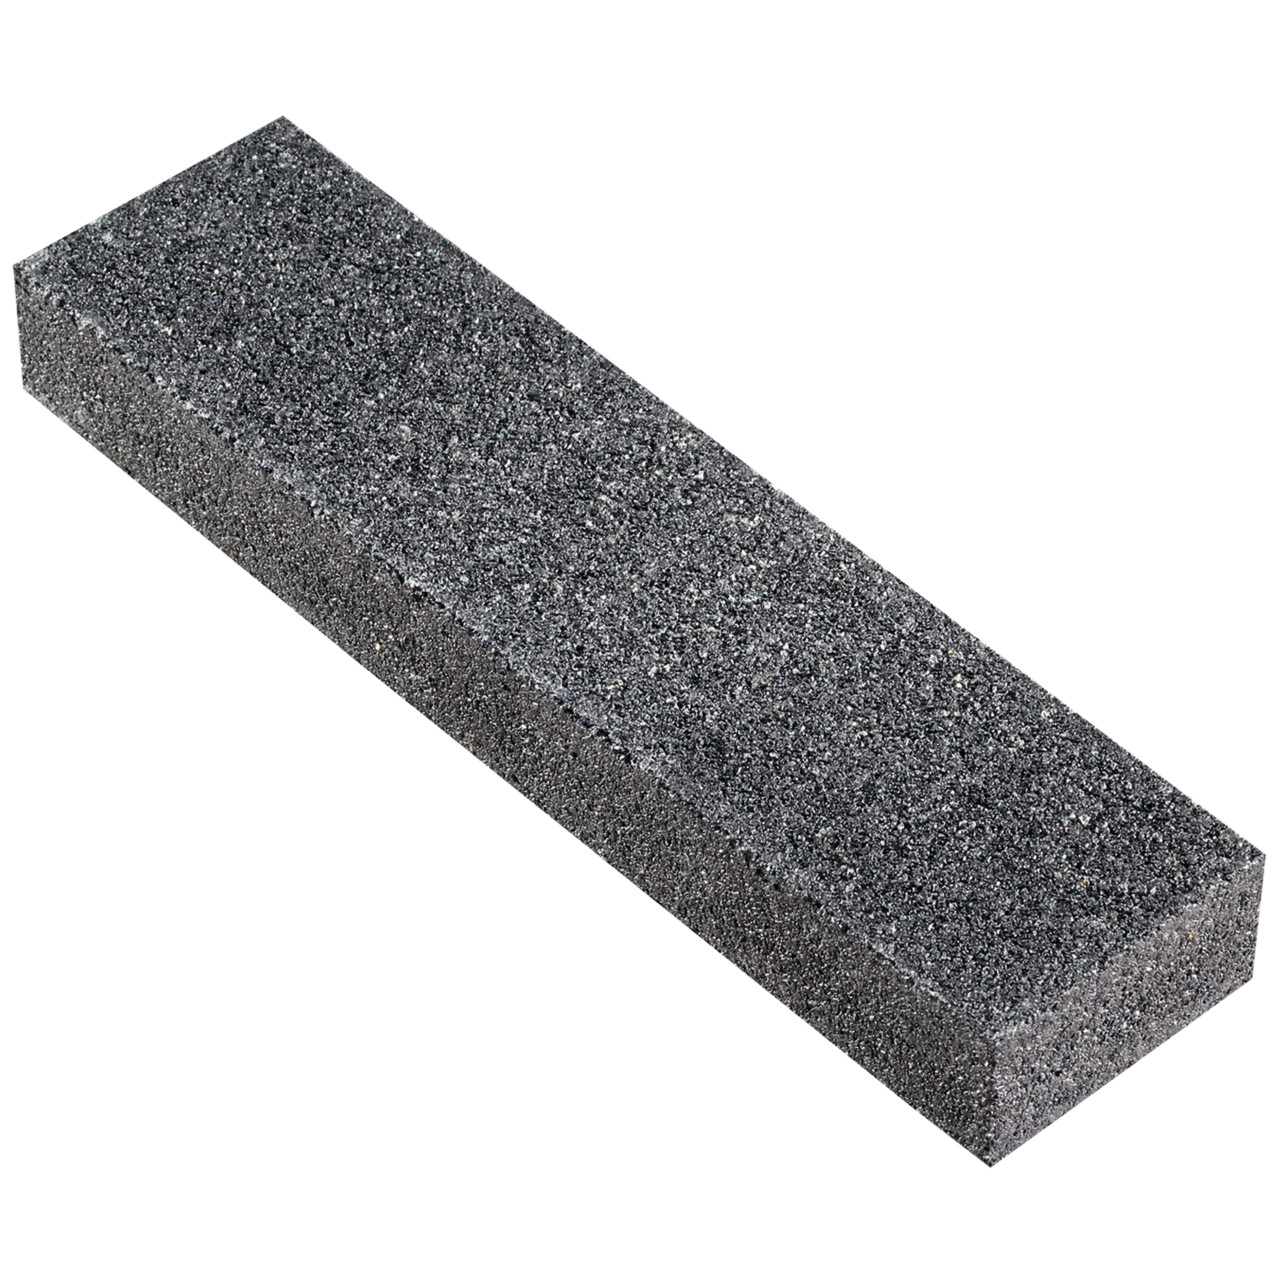 TYROLIT Handgeleide slijpstenen BxCxL 50x25x200 Slijpstenen voor aluminiumoxide en siliciumcarbide slijpschijven, vorm: 90AS, Art. 6216